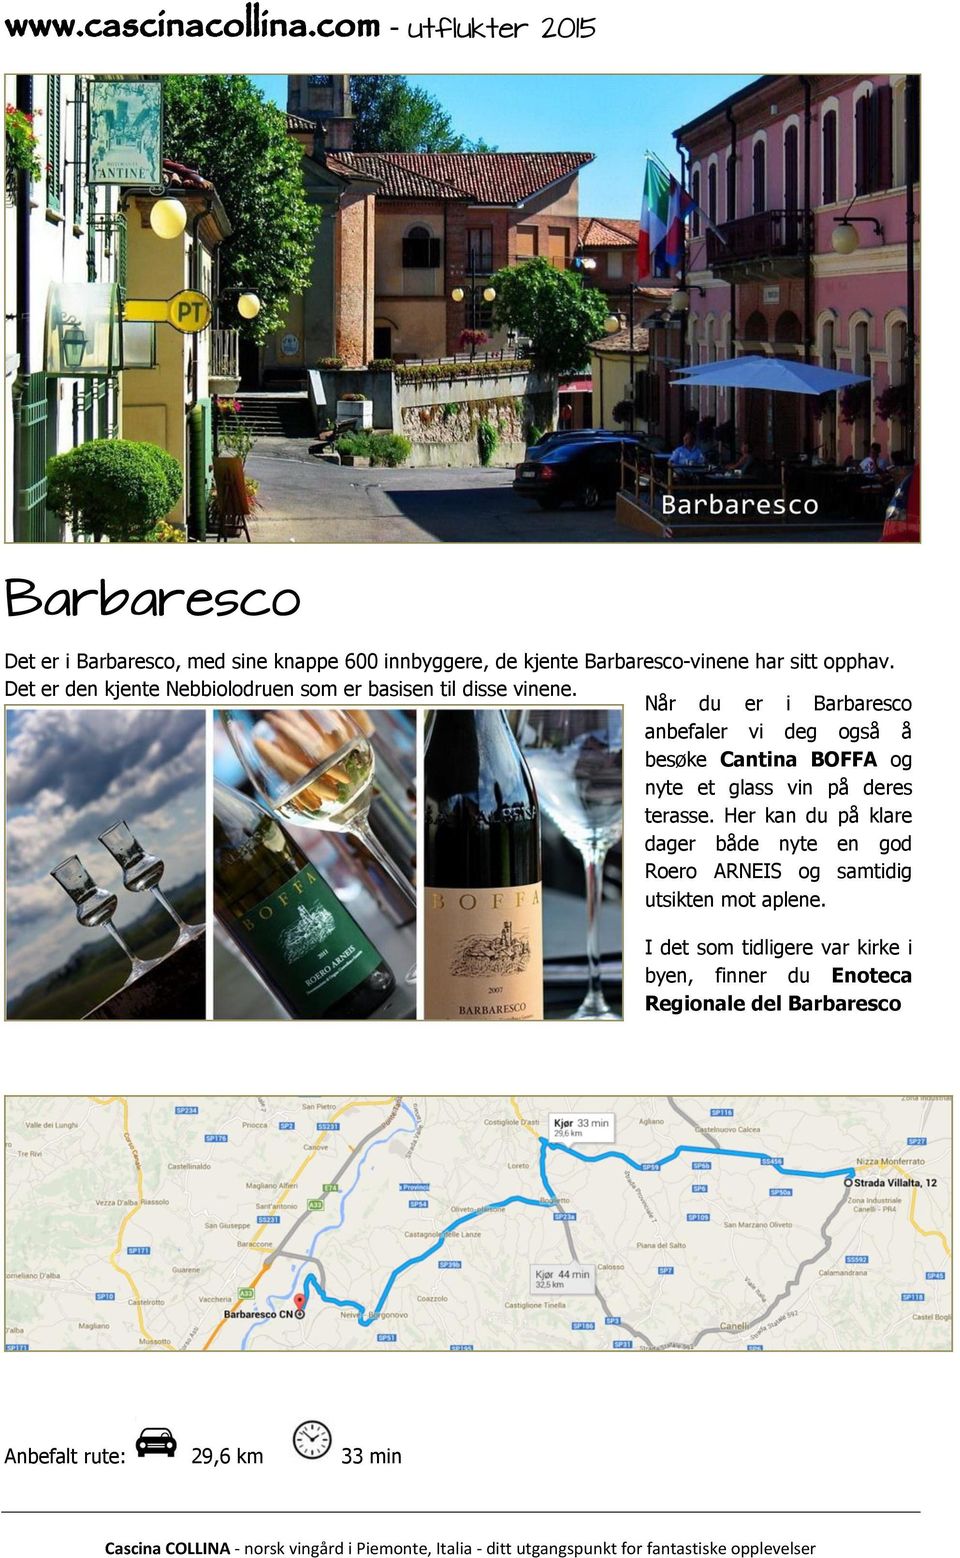 Når du er i Barbaresco anbefaler vi deg også å besøke Cantina BOFFA og nyte et glass vin på deres terasse.